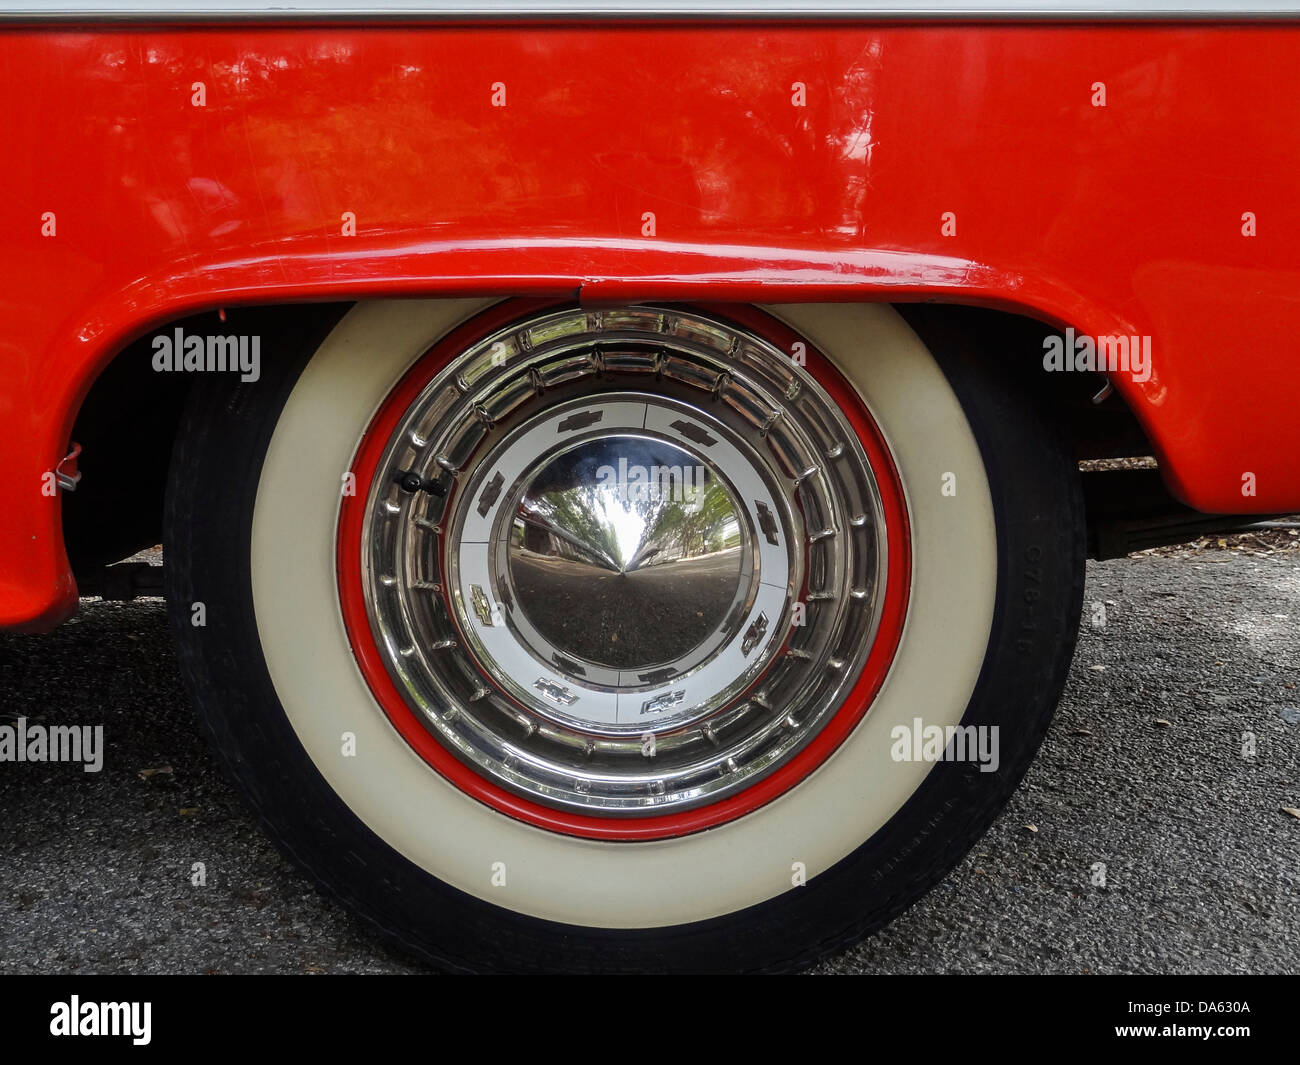 1955, Classic Car, Chevrolet, Bel Air, General Motors, New Braunfels, viejo coche, rojo, blanco, Texas, Estados Unidos, Estados Unidos, América, Foto de stock